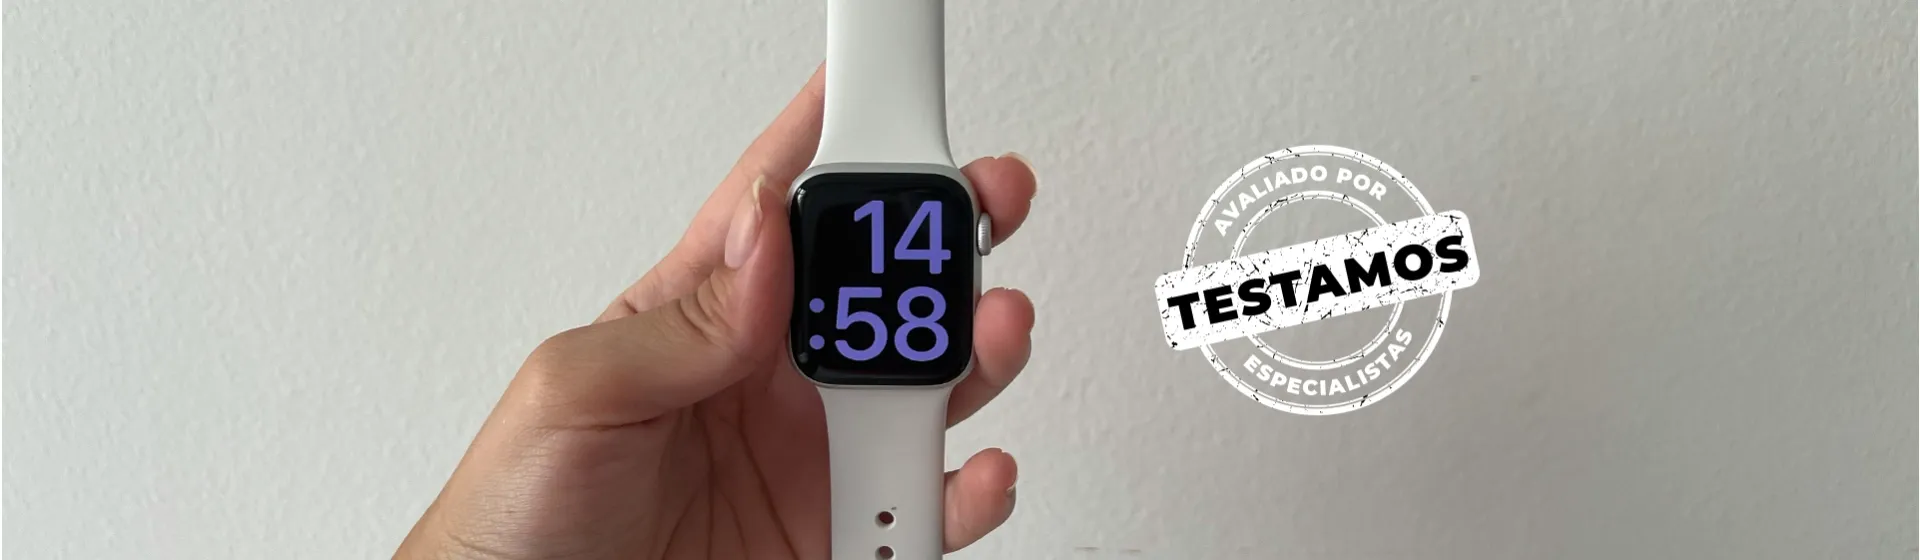 Capa do post: Apple Watch 6: cinco maneiras do relógio facilitar tarefas do dia a dia